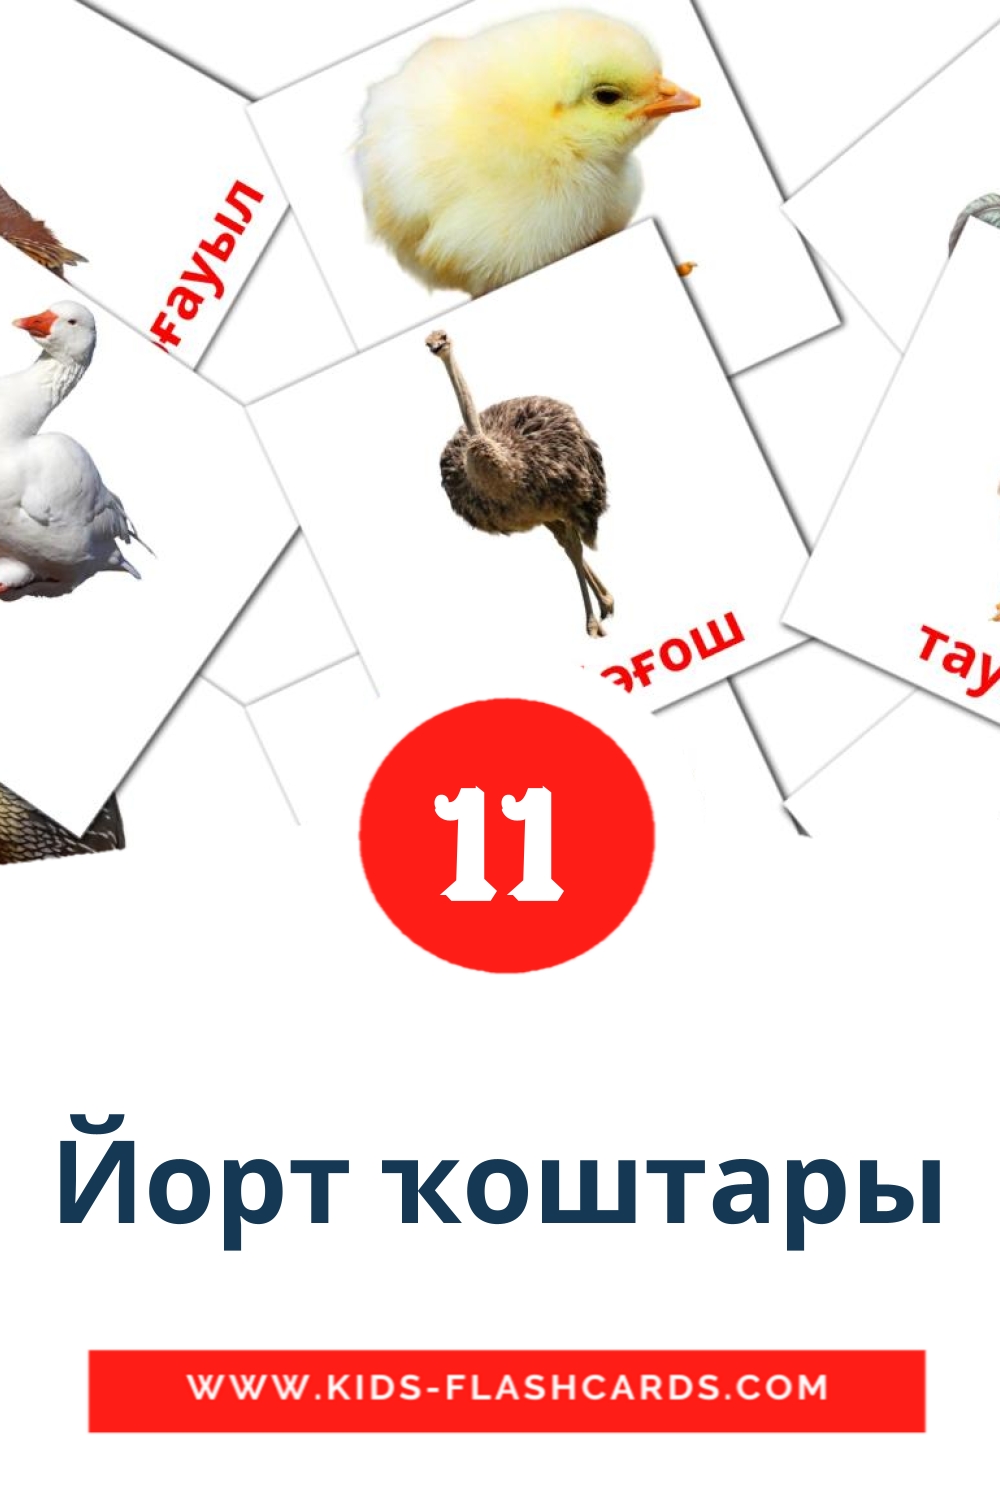 11 Cartões com Imagens de Йорт ҡоштары para Jardim de Infância em bashkir